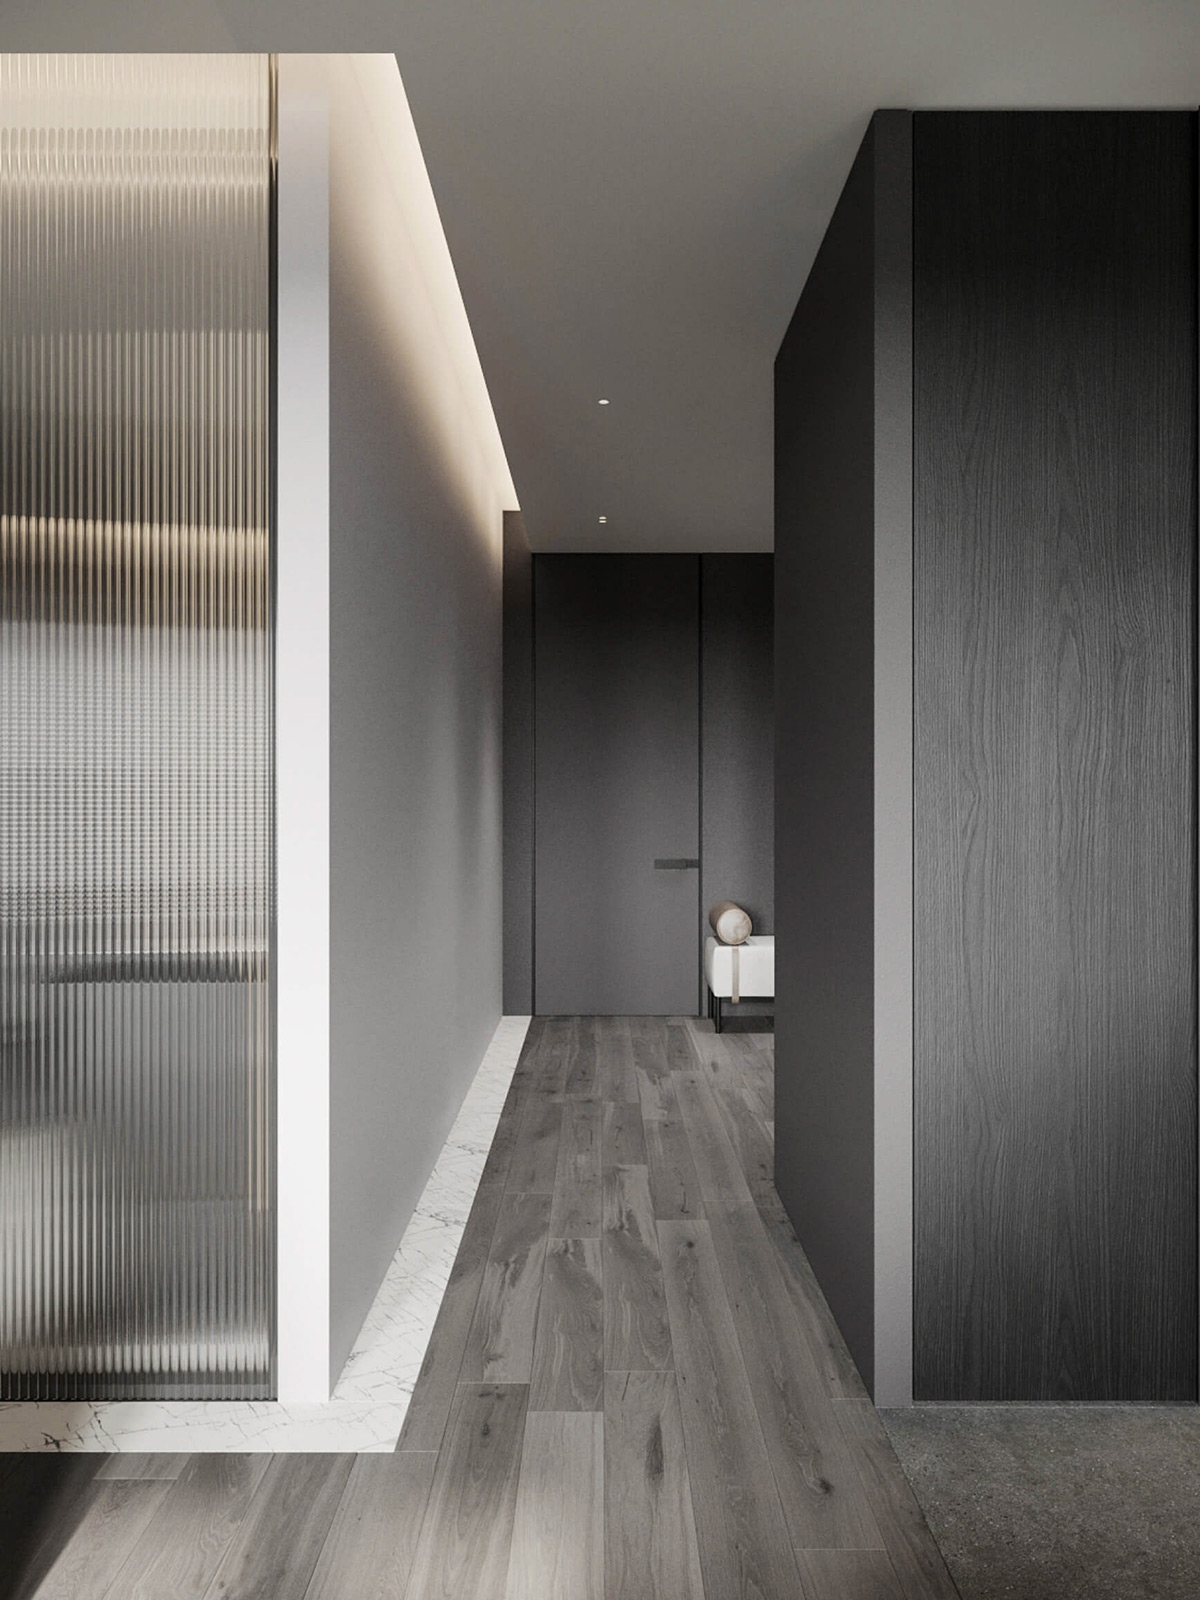 sophisticated gray scale monochromatic interior design 33